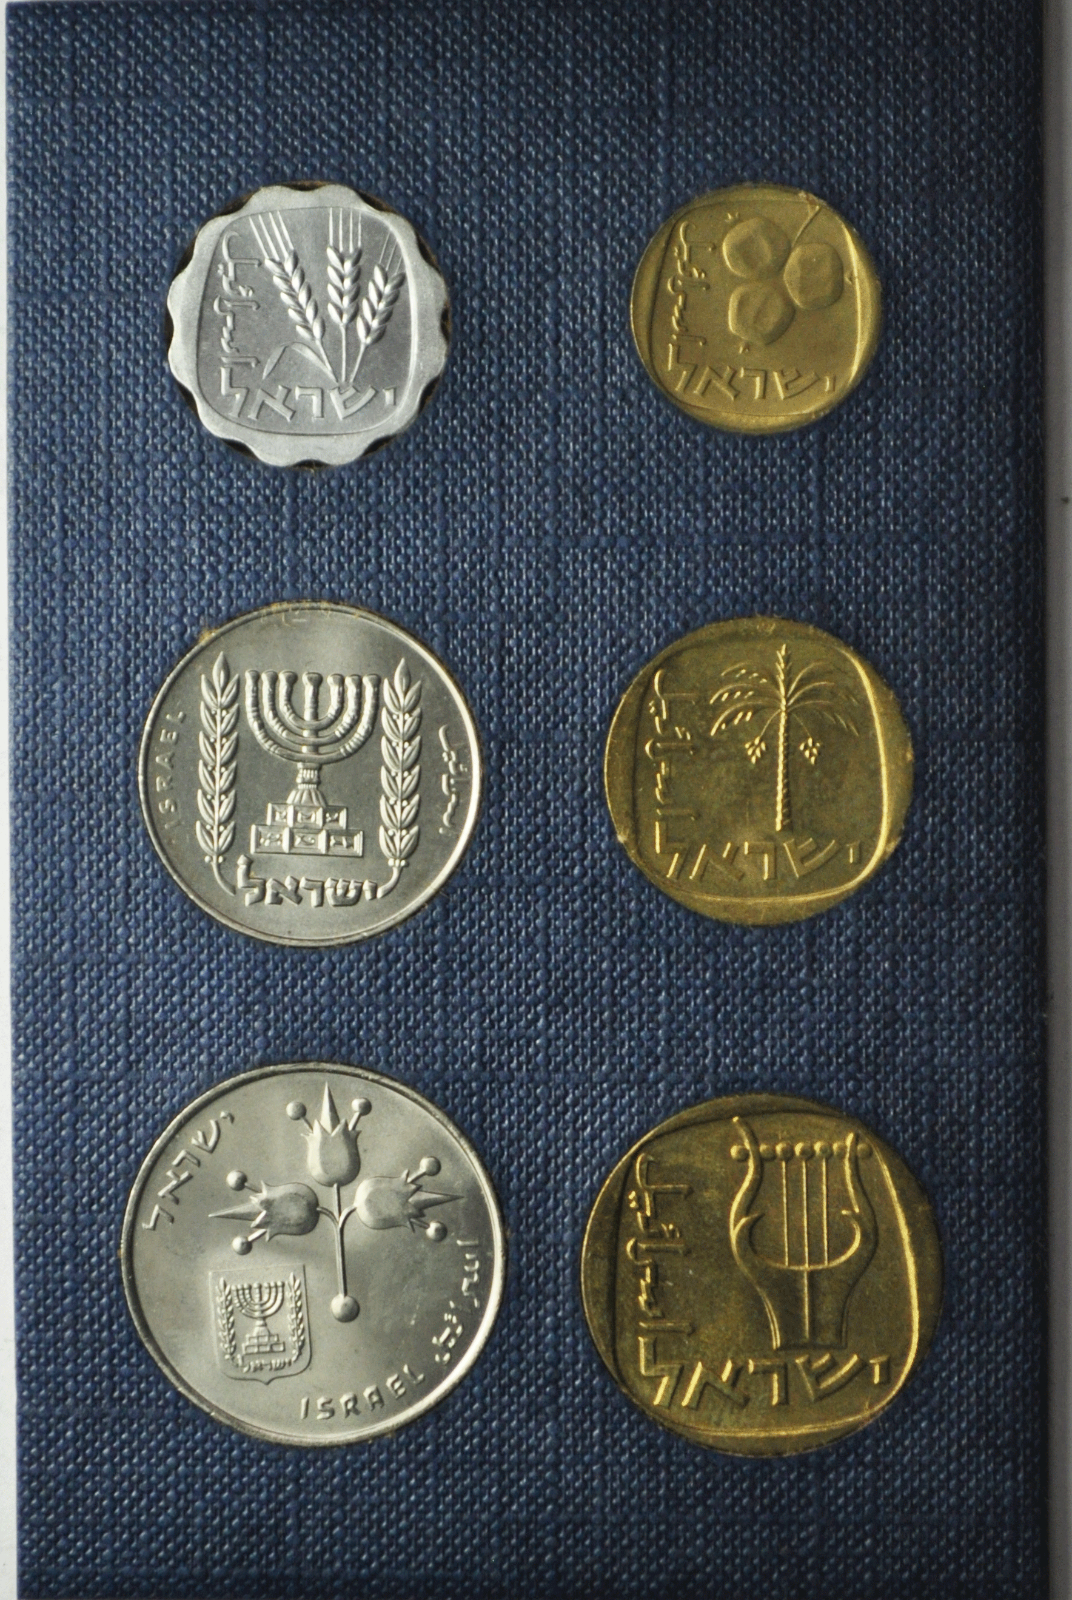 1971 Jerusalem Specimen 6 Coin Set Uncirculated